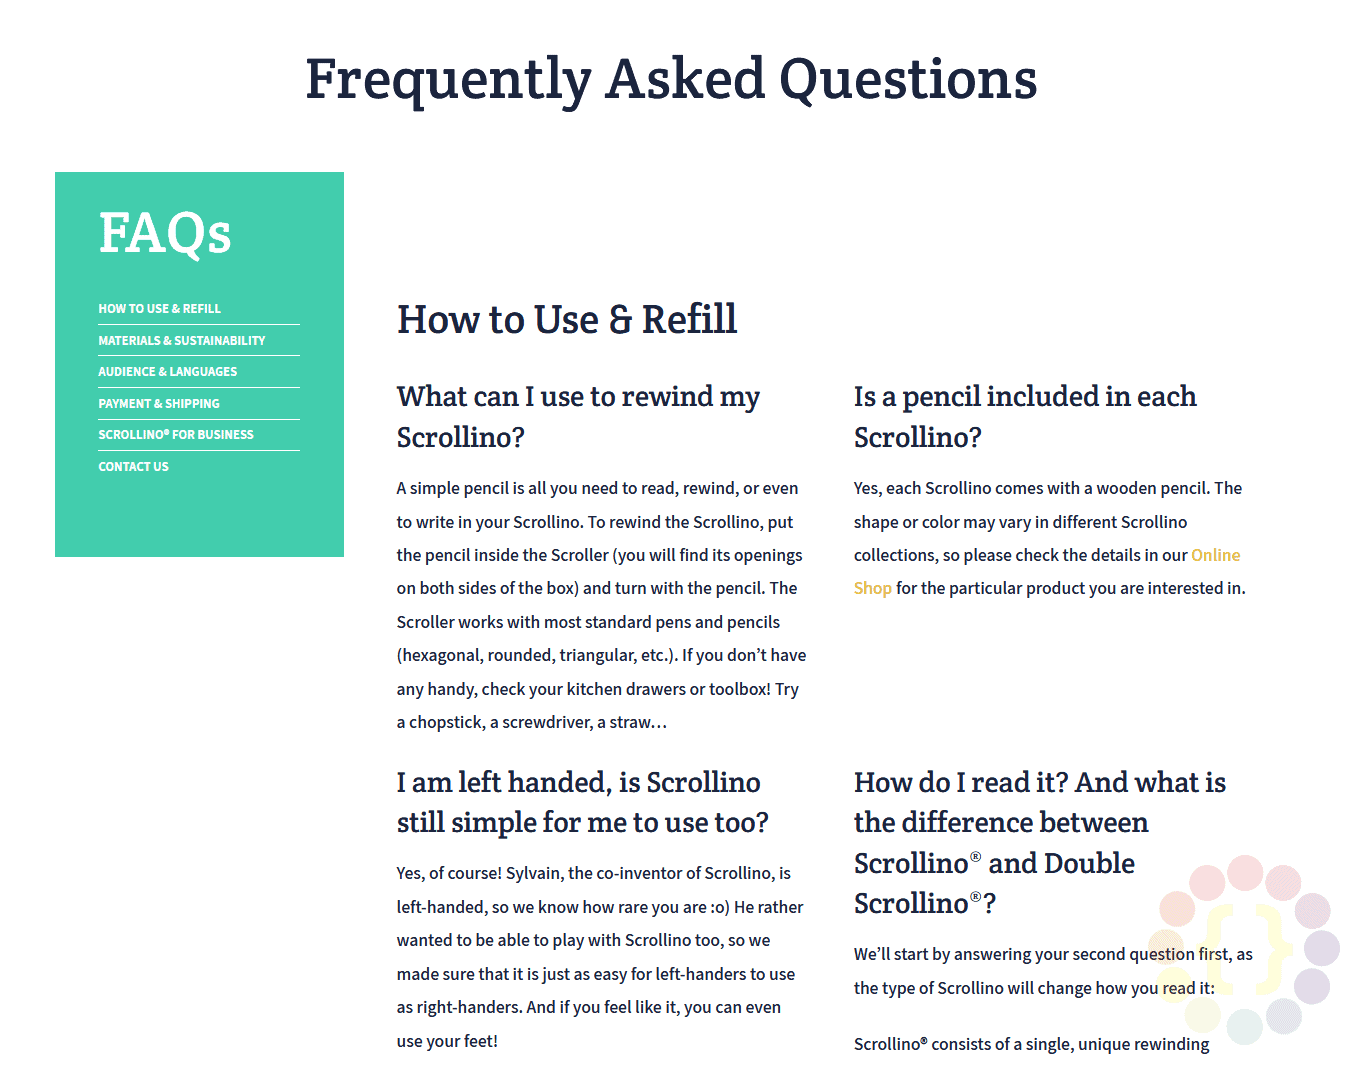 Trang FAQ được phân loại của Scrollino